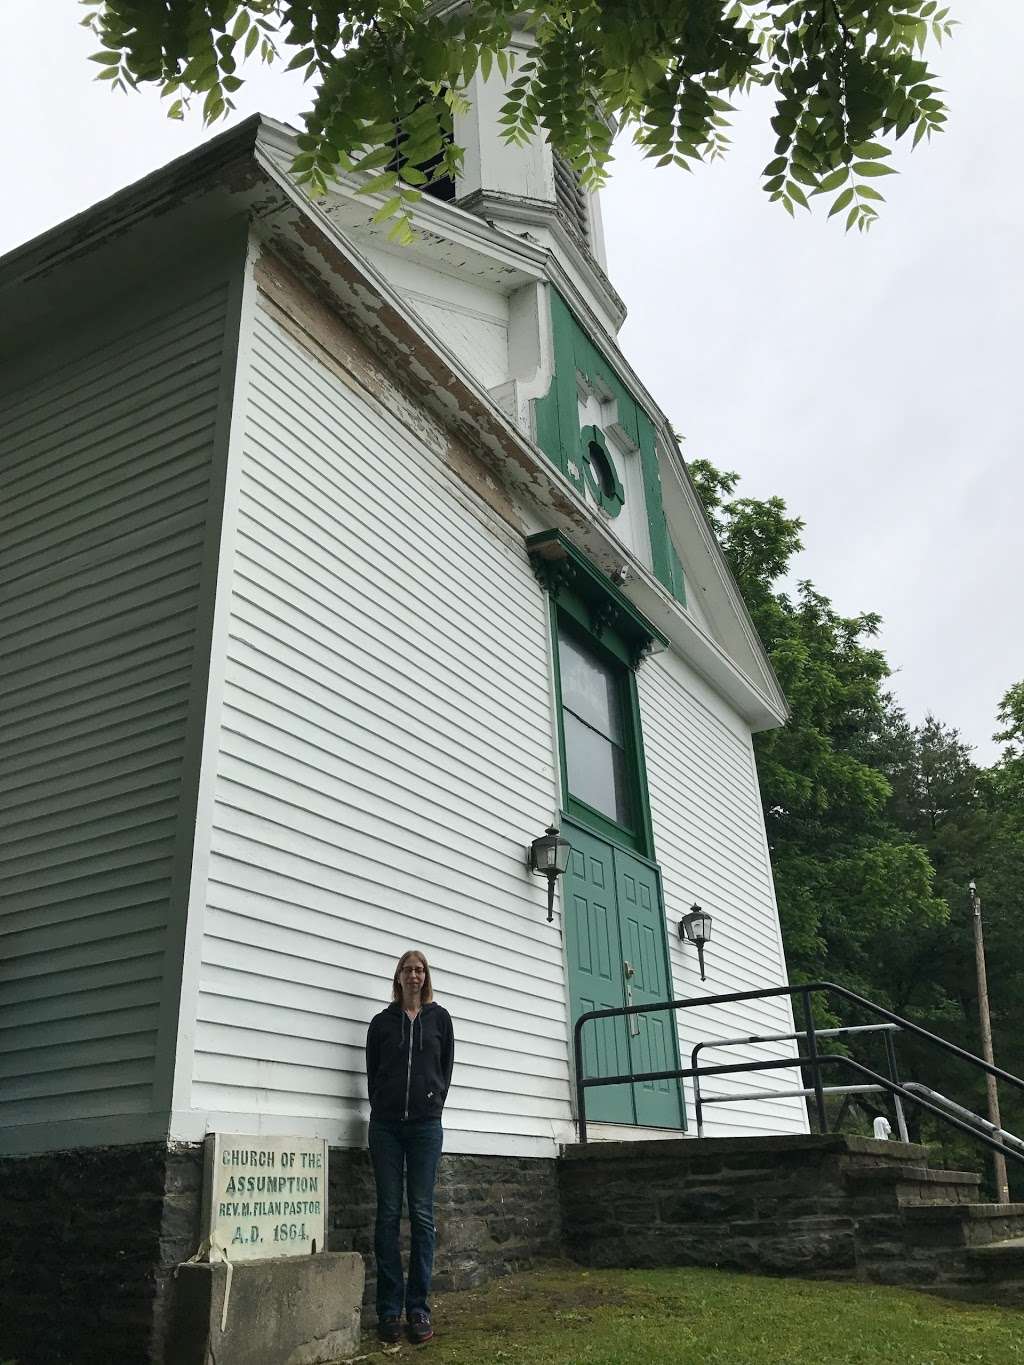 Saint Marys Church | PA-590, Lackawaxen, PA 18435, USA